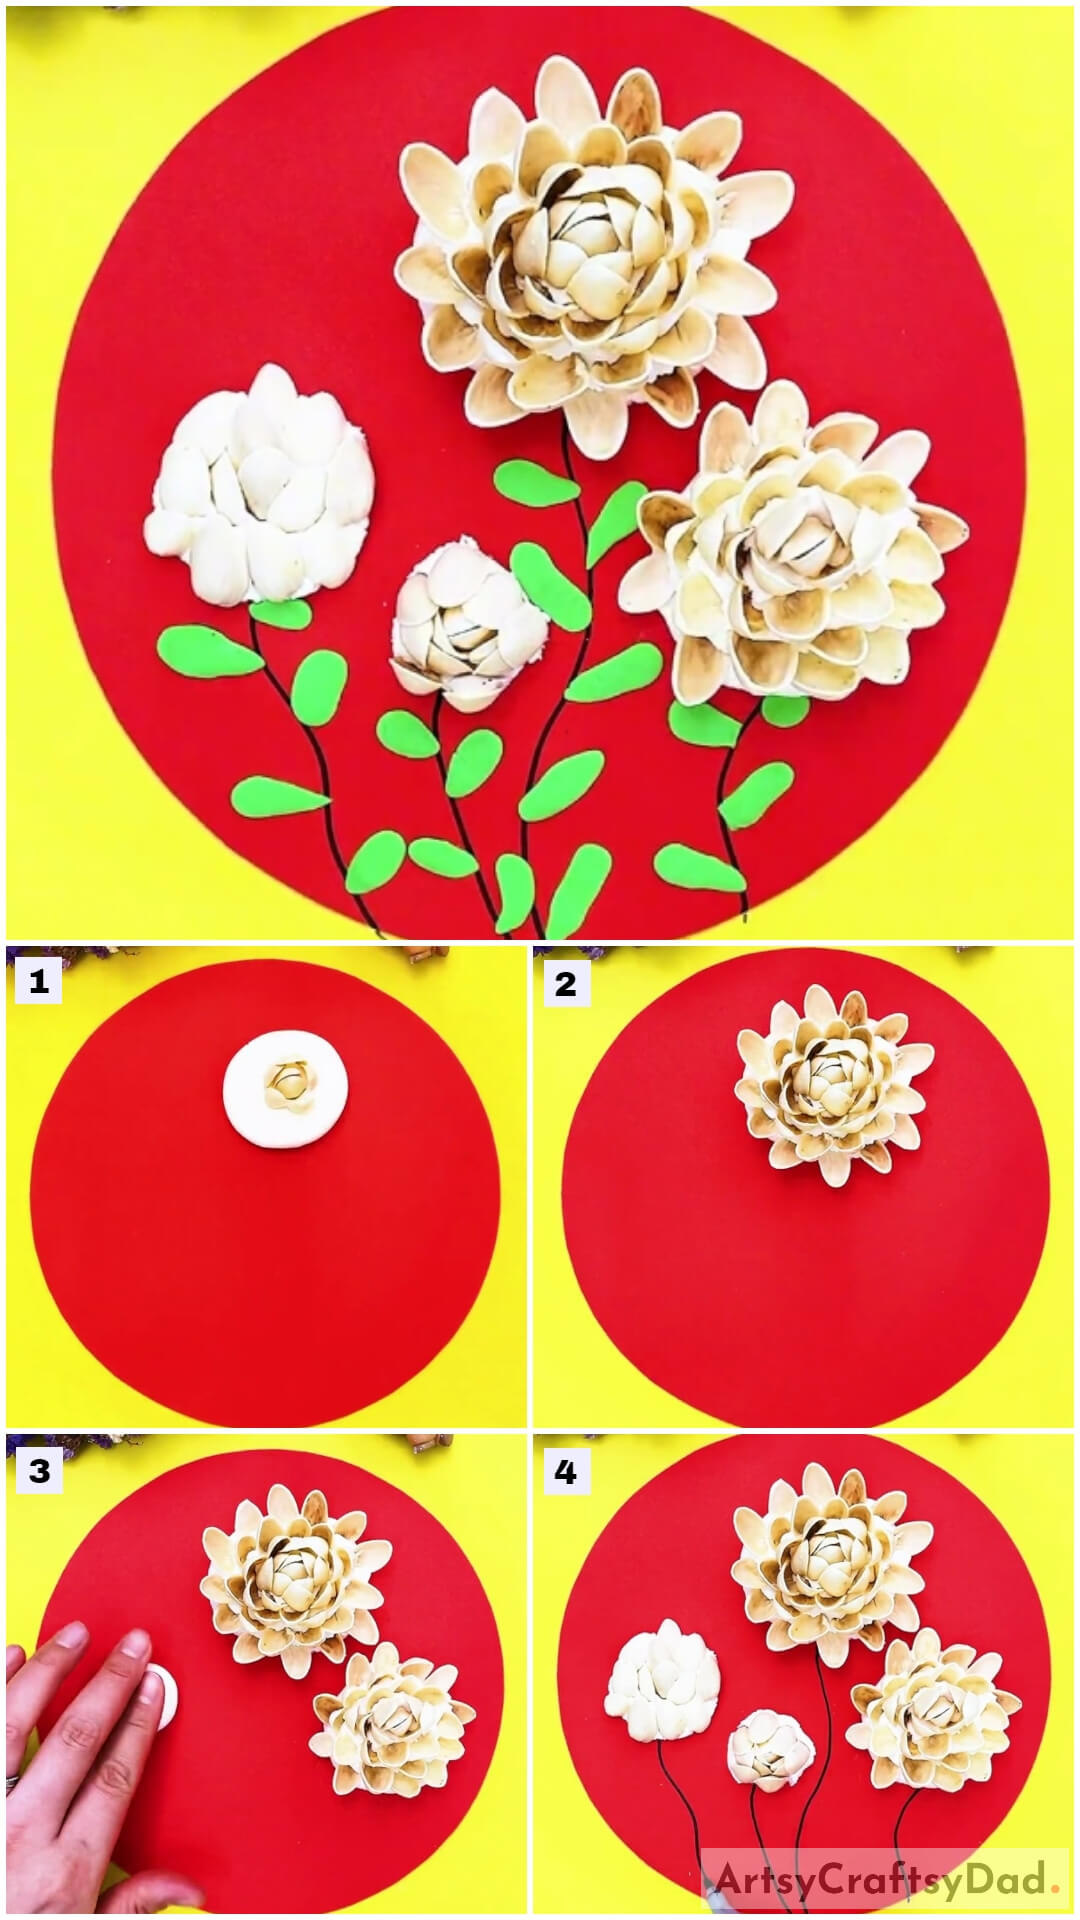 Chrysanthemum Flower Garden: Clay & Pistachio Shells Craft Tutorial